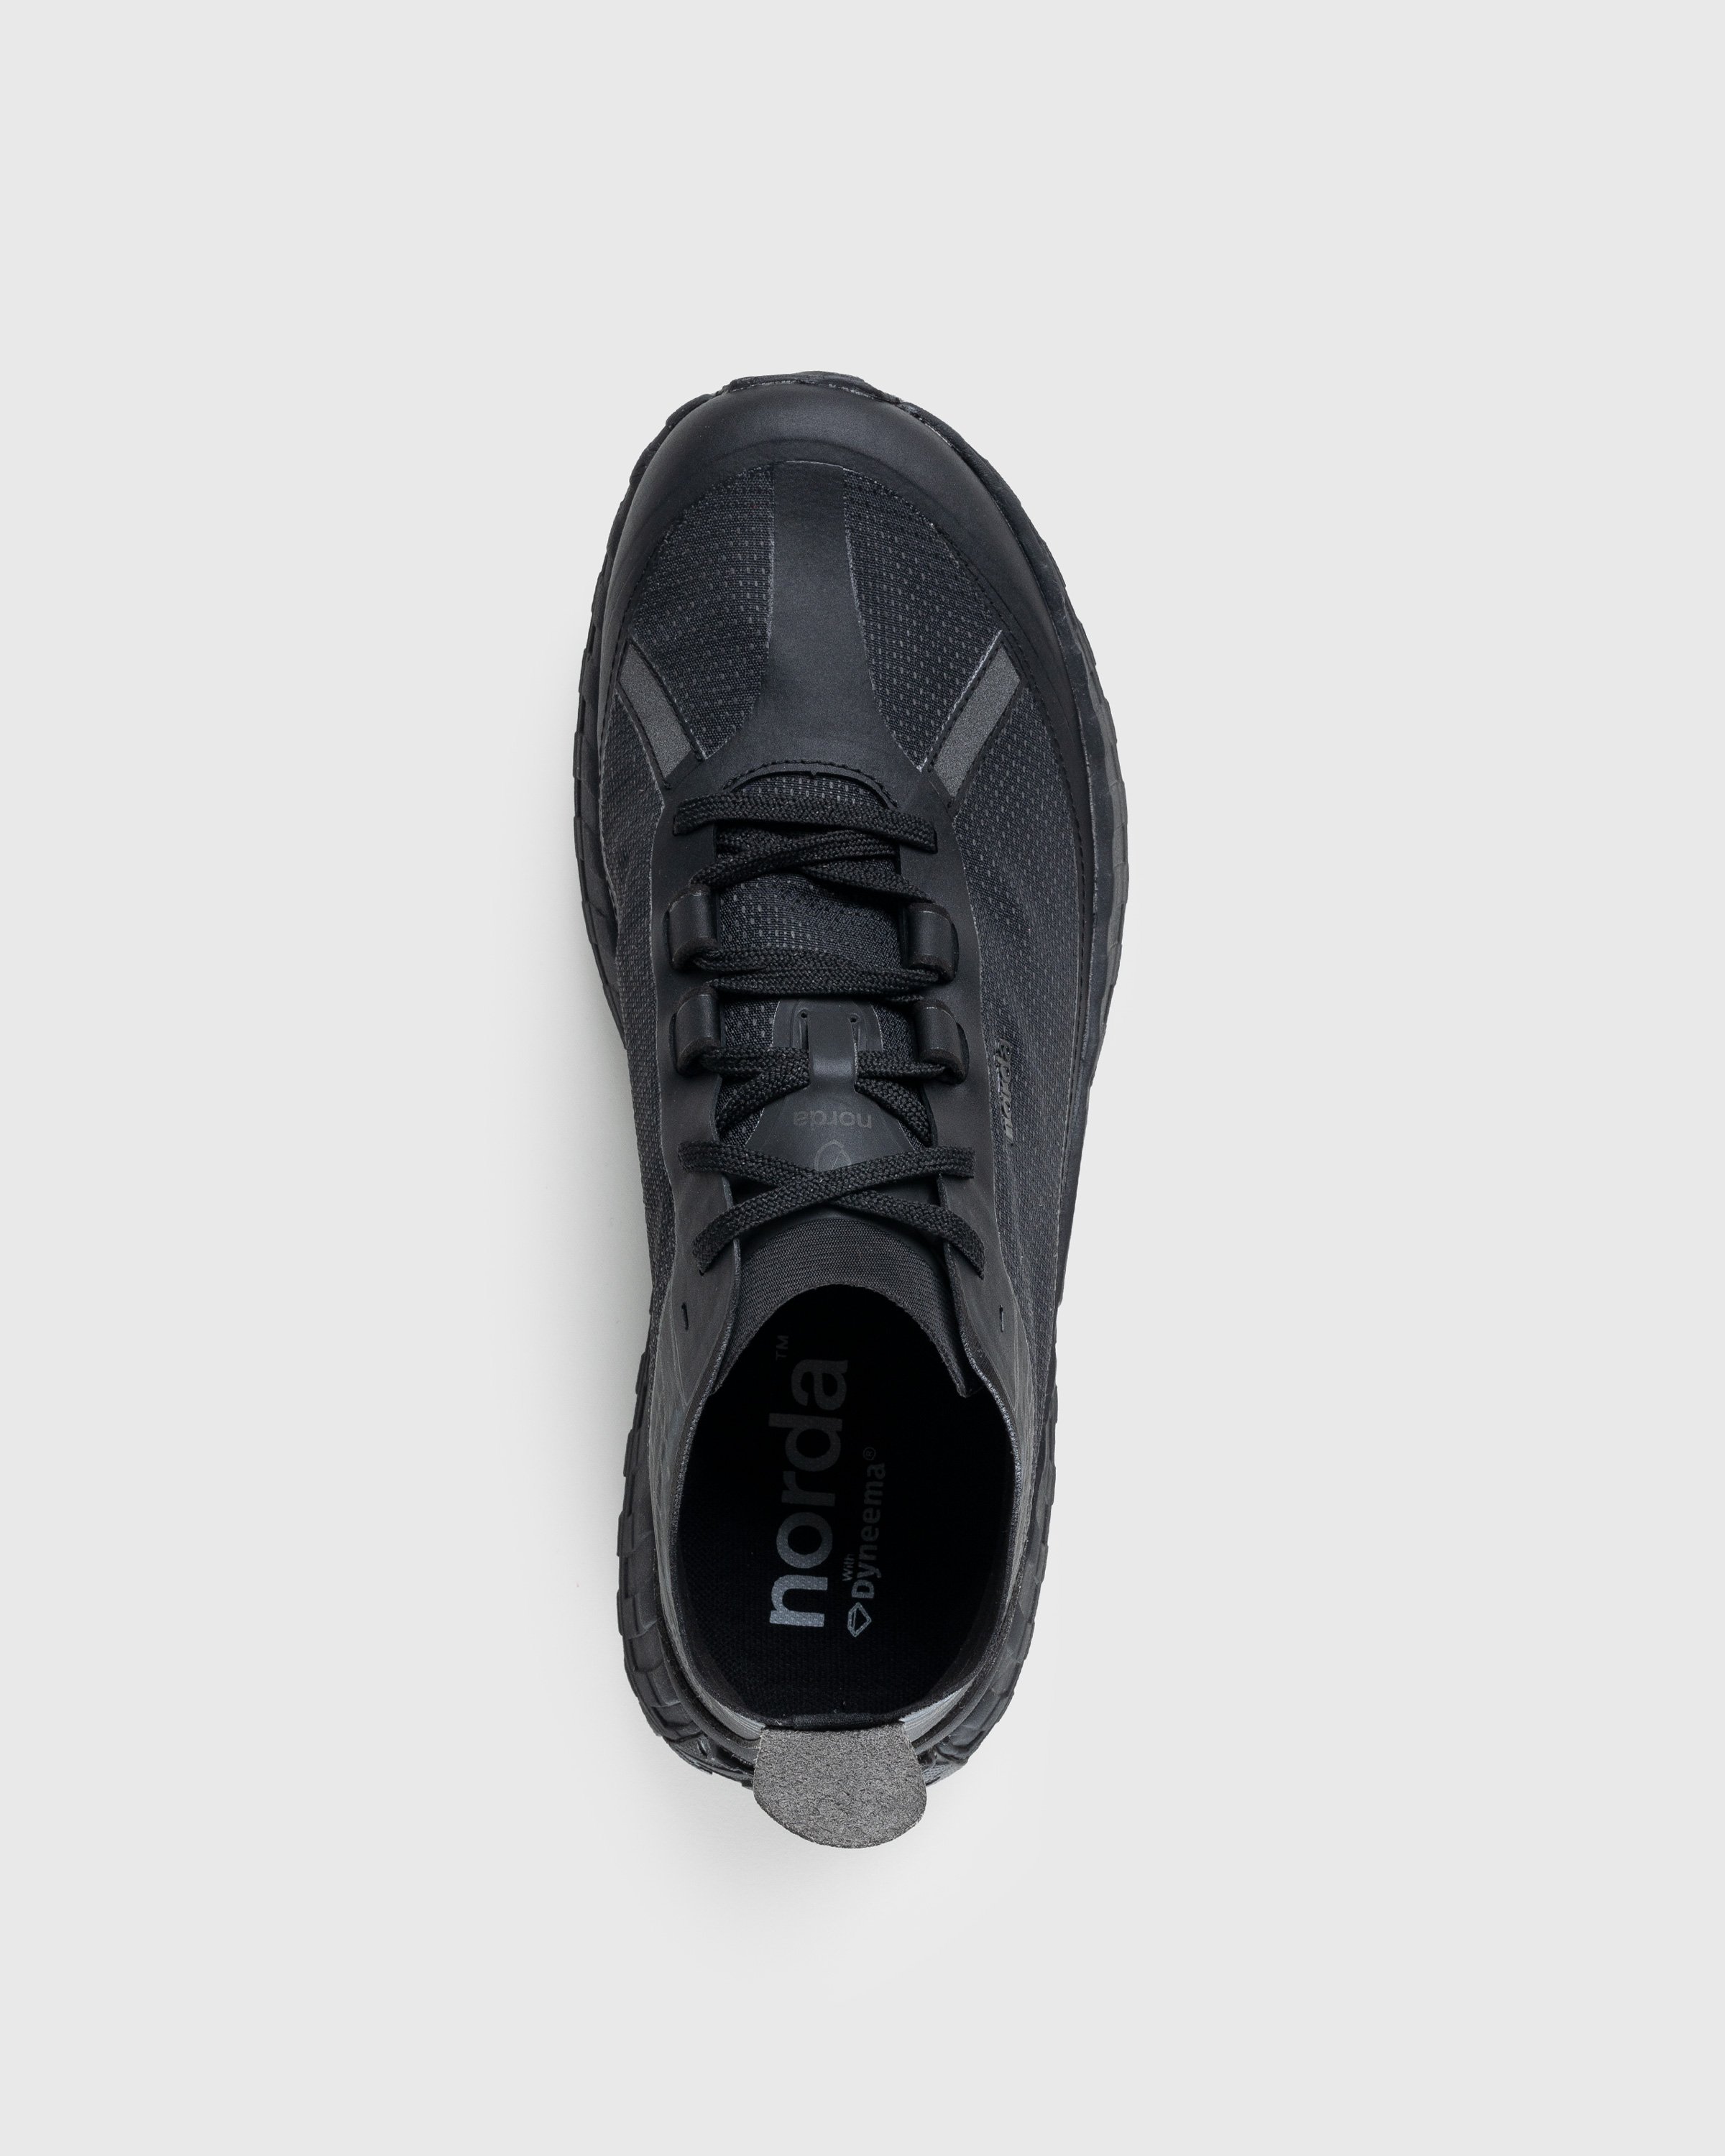 Norda - 001 W Stealth Black - Footwear - Black - Image 5